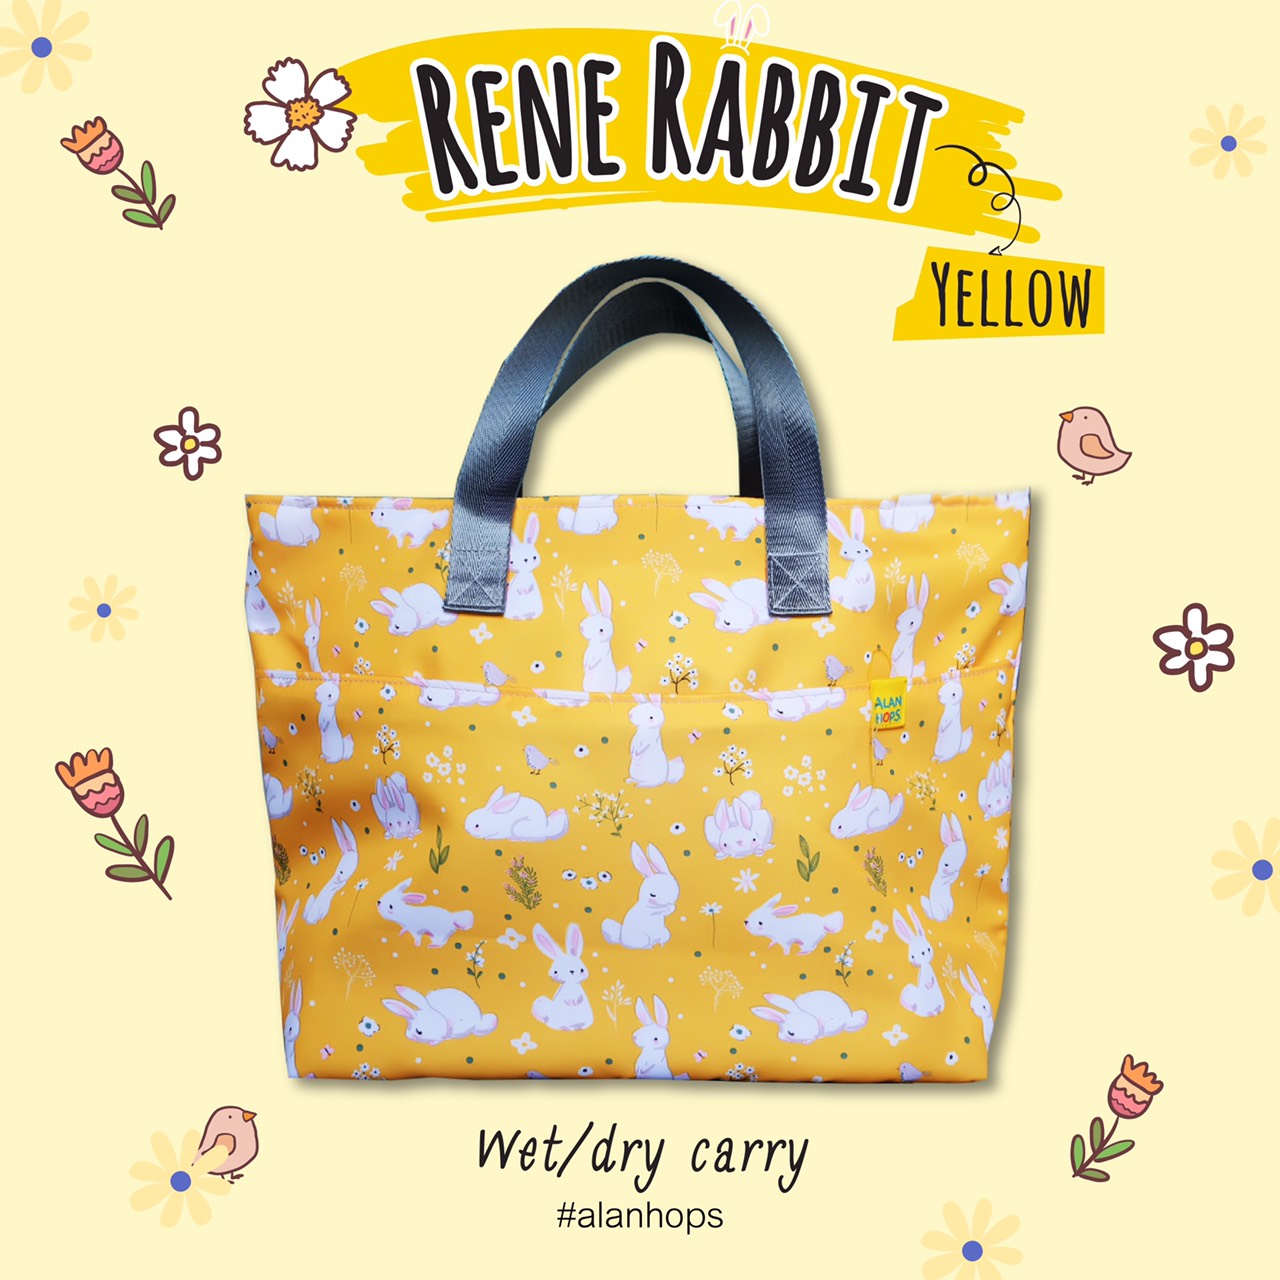 Alan Hops Carry/Rene Rabbit Yellow